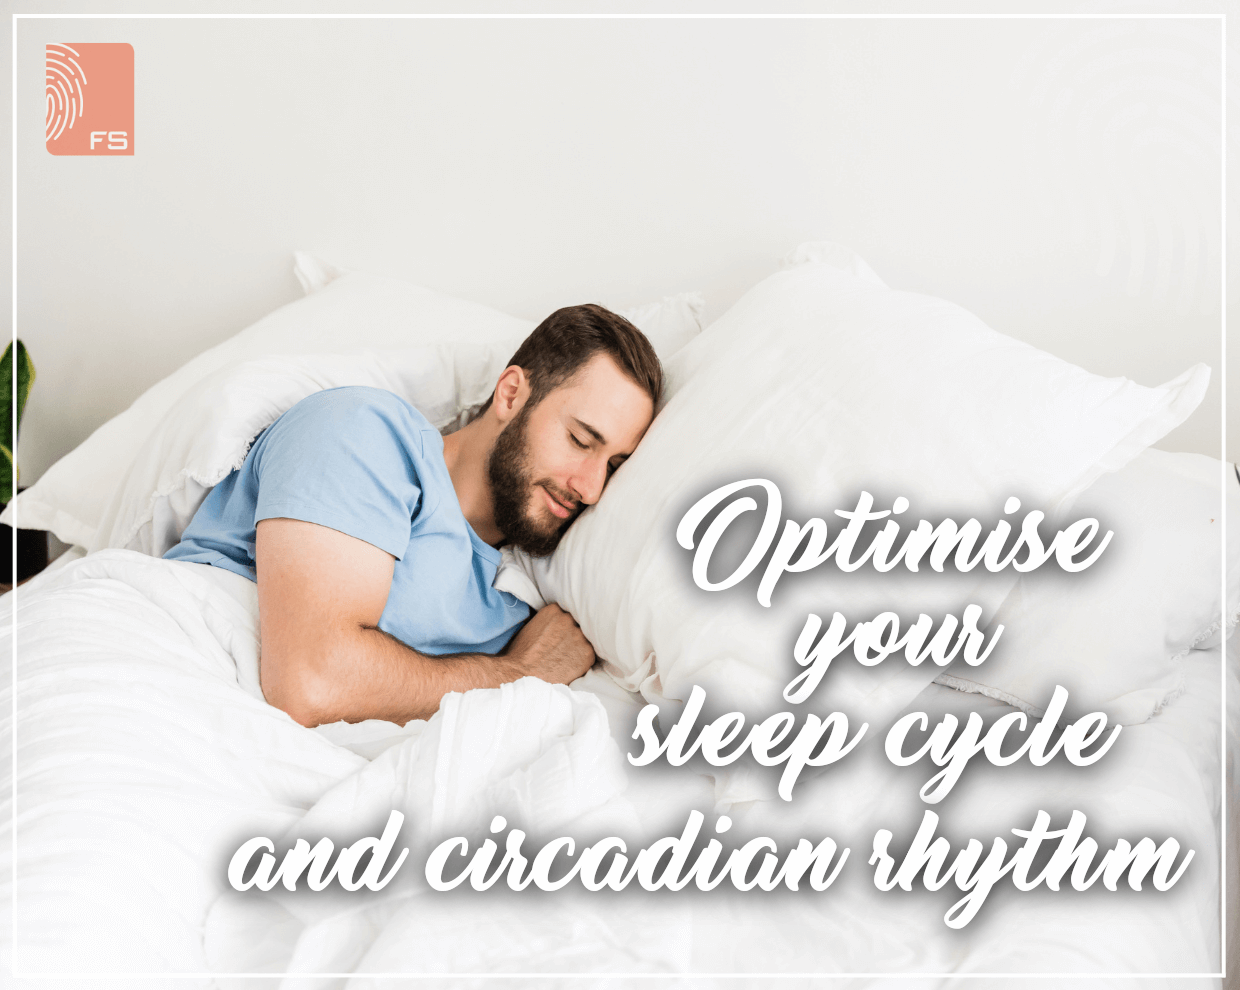 Optimise your sleep cycle and circadian rhythm